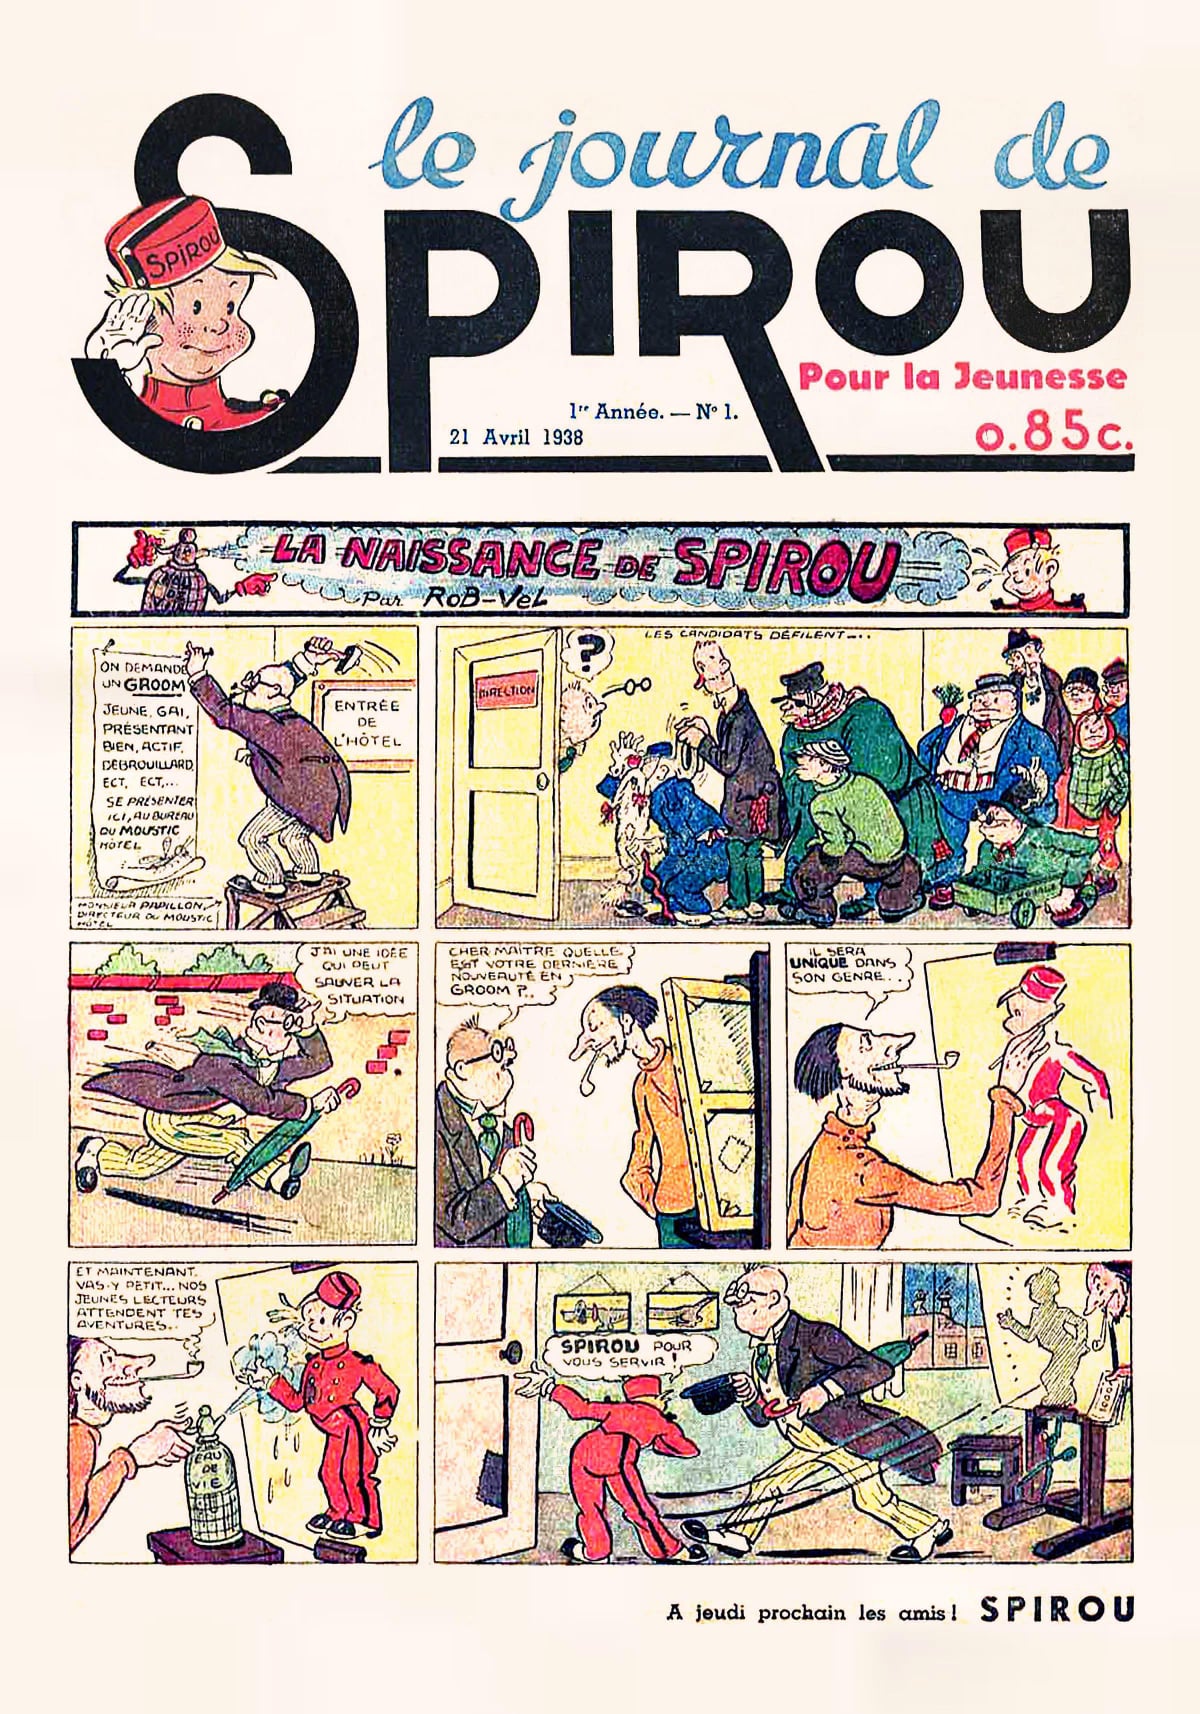 il y a 83 ans aujourd'hui, le premier numéro de l'hebdomadaire Spirou était publié.